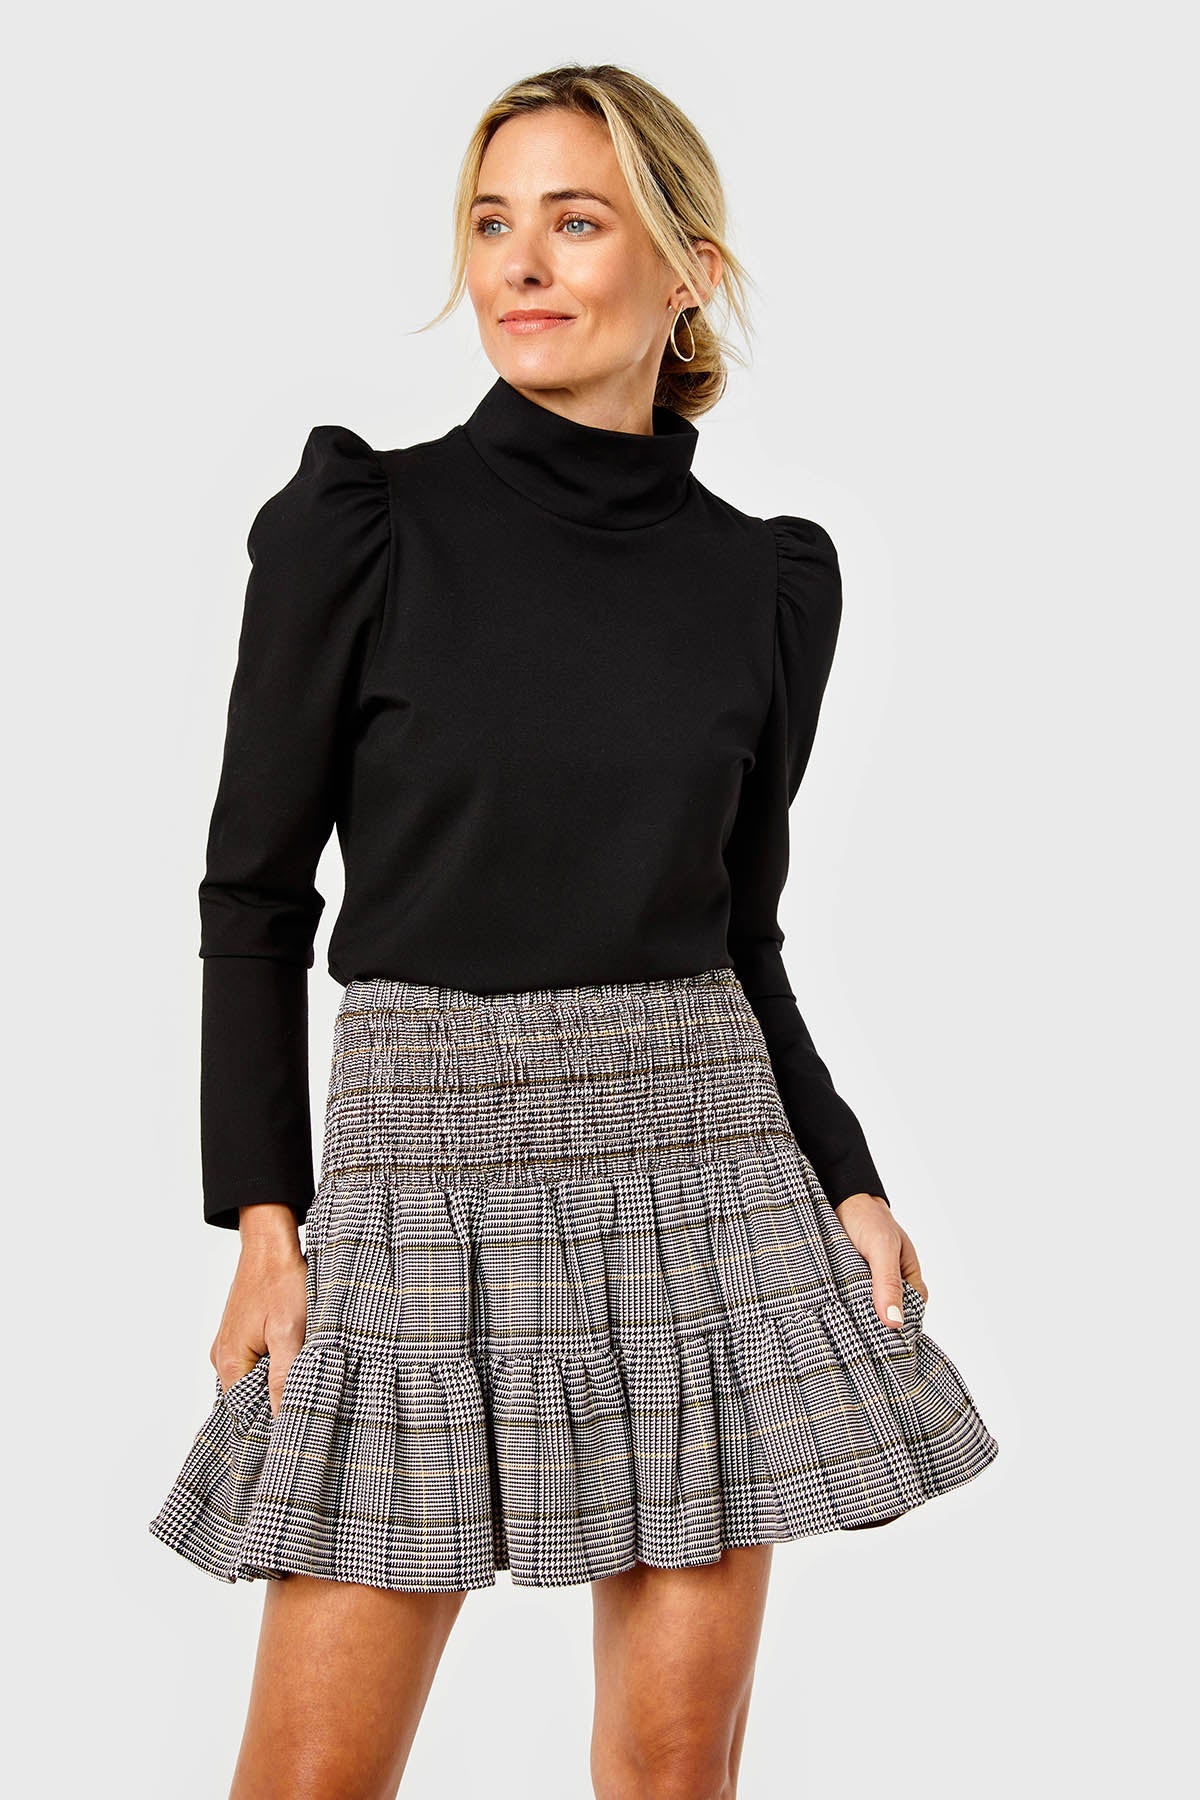 Kylie Skirt-Tweed-Saddle by Cartolina